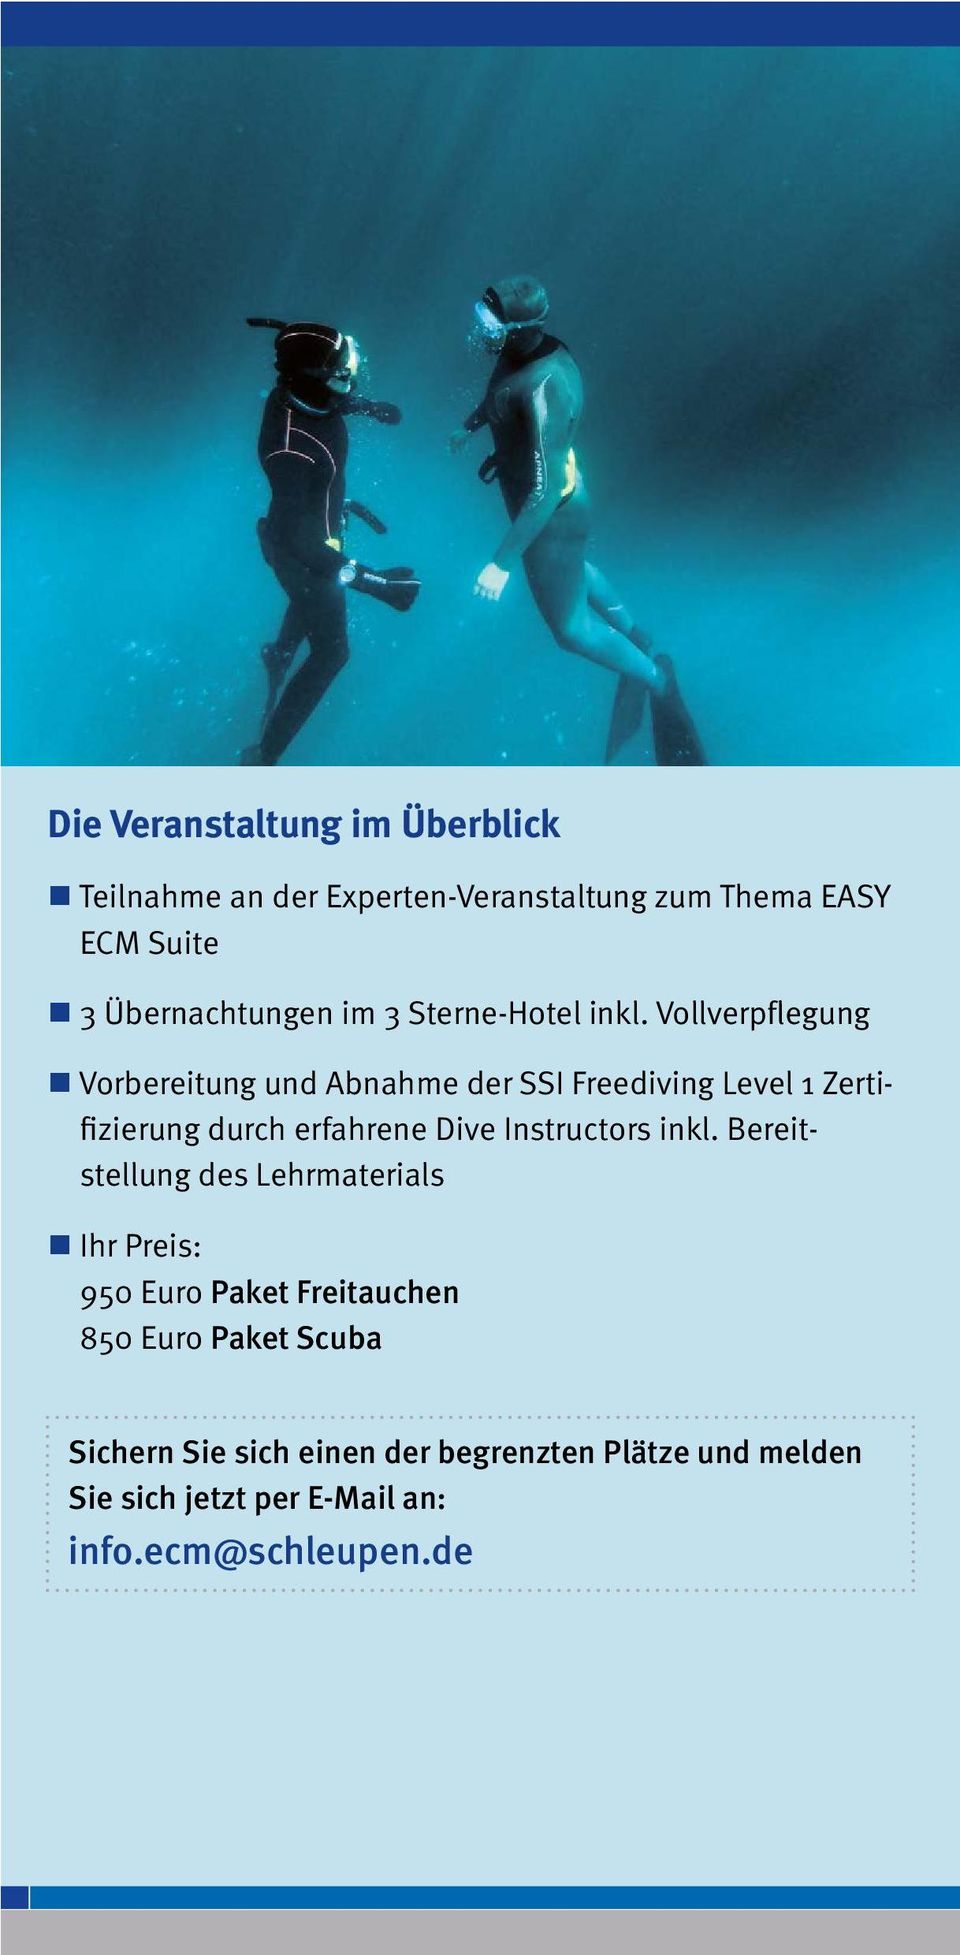 Vollverpflegung Vorbereitung und Abnahme der SSI Freediving Level 1 Zertifizierung durch erfahrene Dive